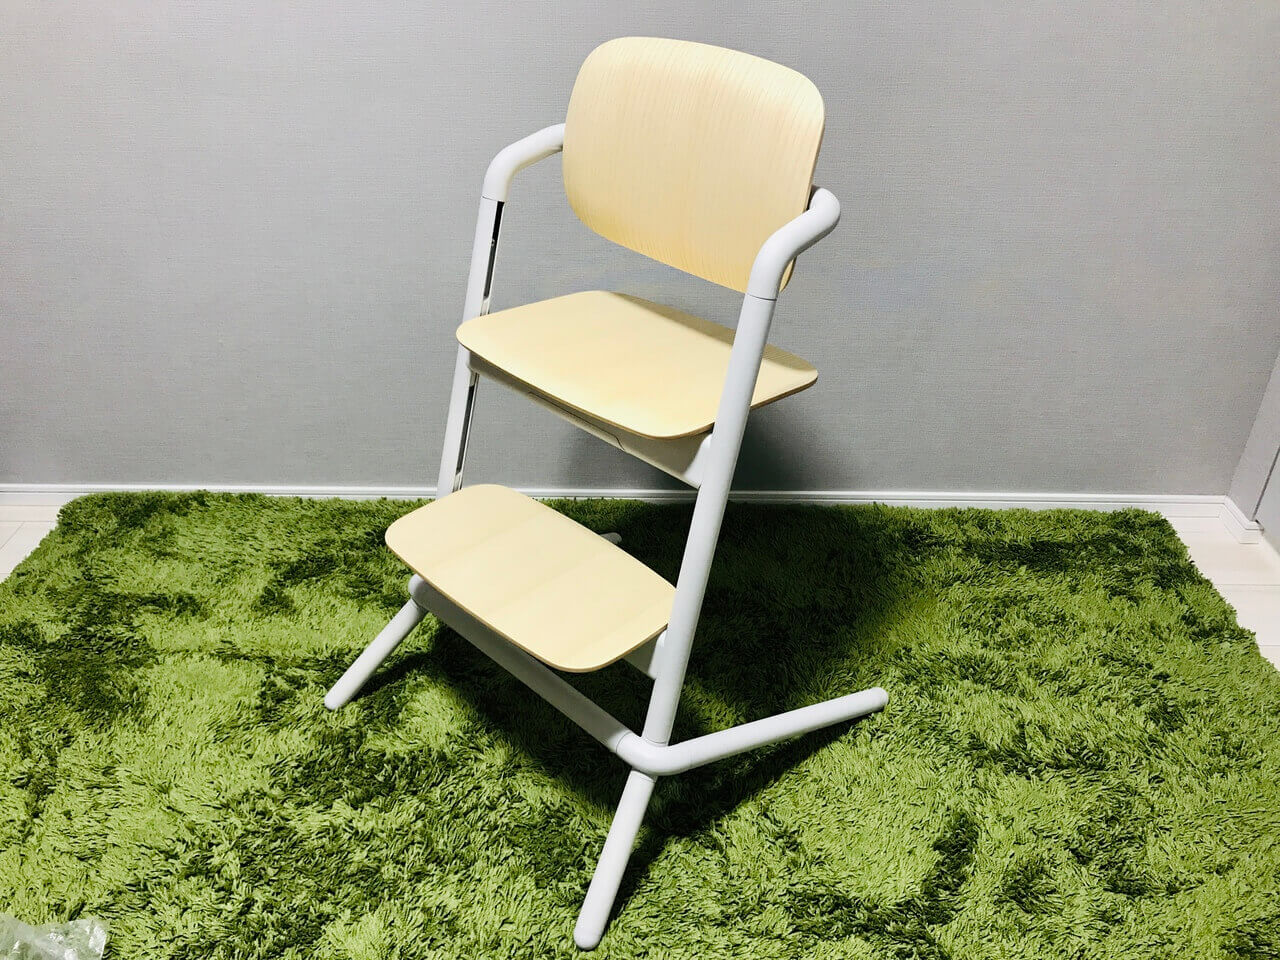 Cybex_LEMO_CHAIRcybex lemo chair 組み立て完了